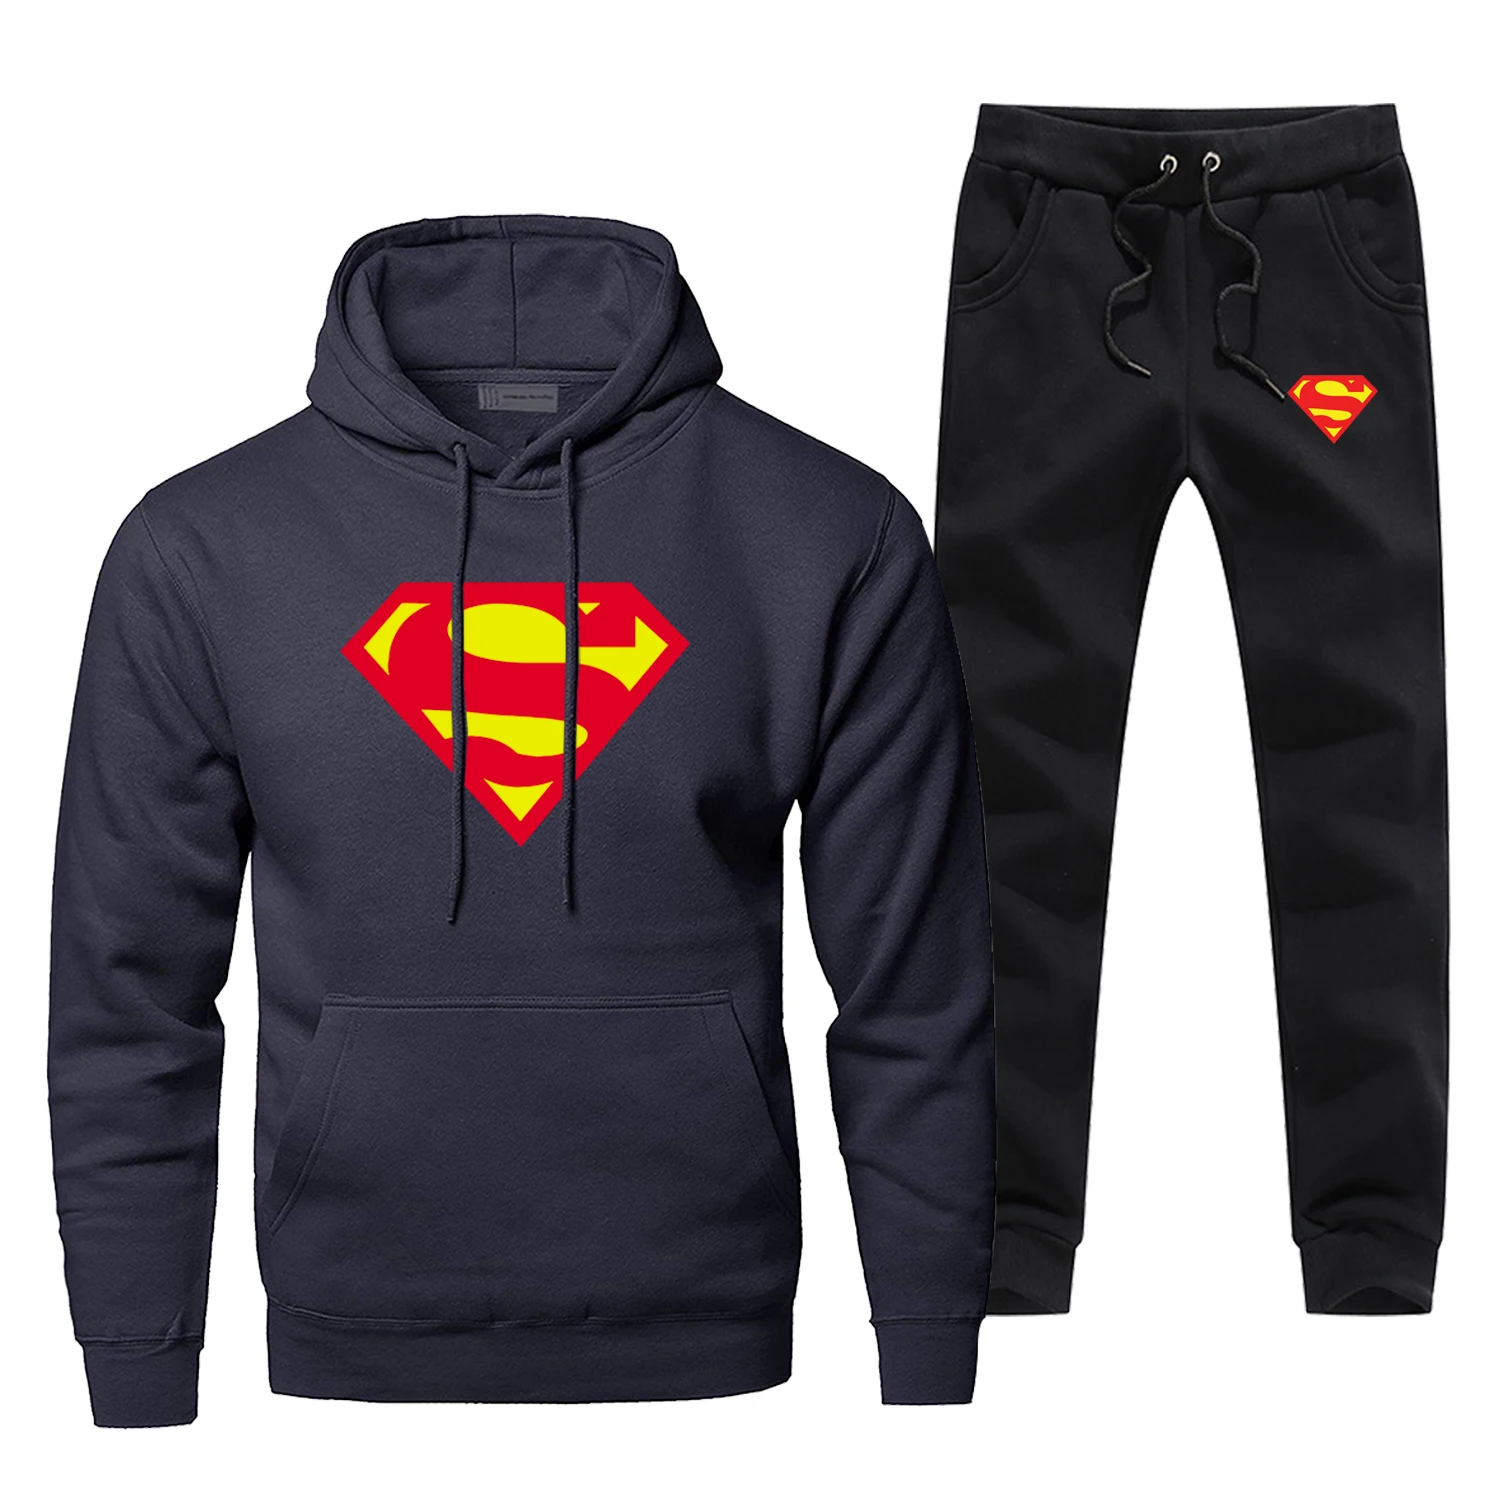 Супермен, Кларк, Кент, толстовки, брюки, наборы, мужской костюм, спортивный костюм, 2 предмета, Супермен, толстовка, спортивные штаны, спортивная одежда, осенний спортивный комплект